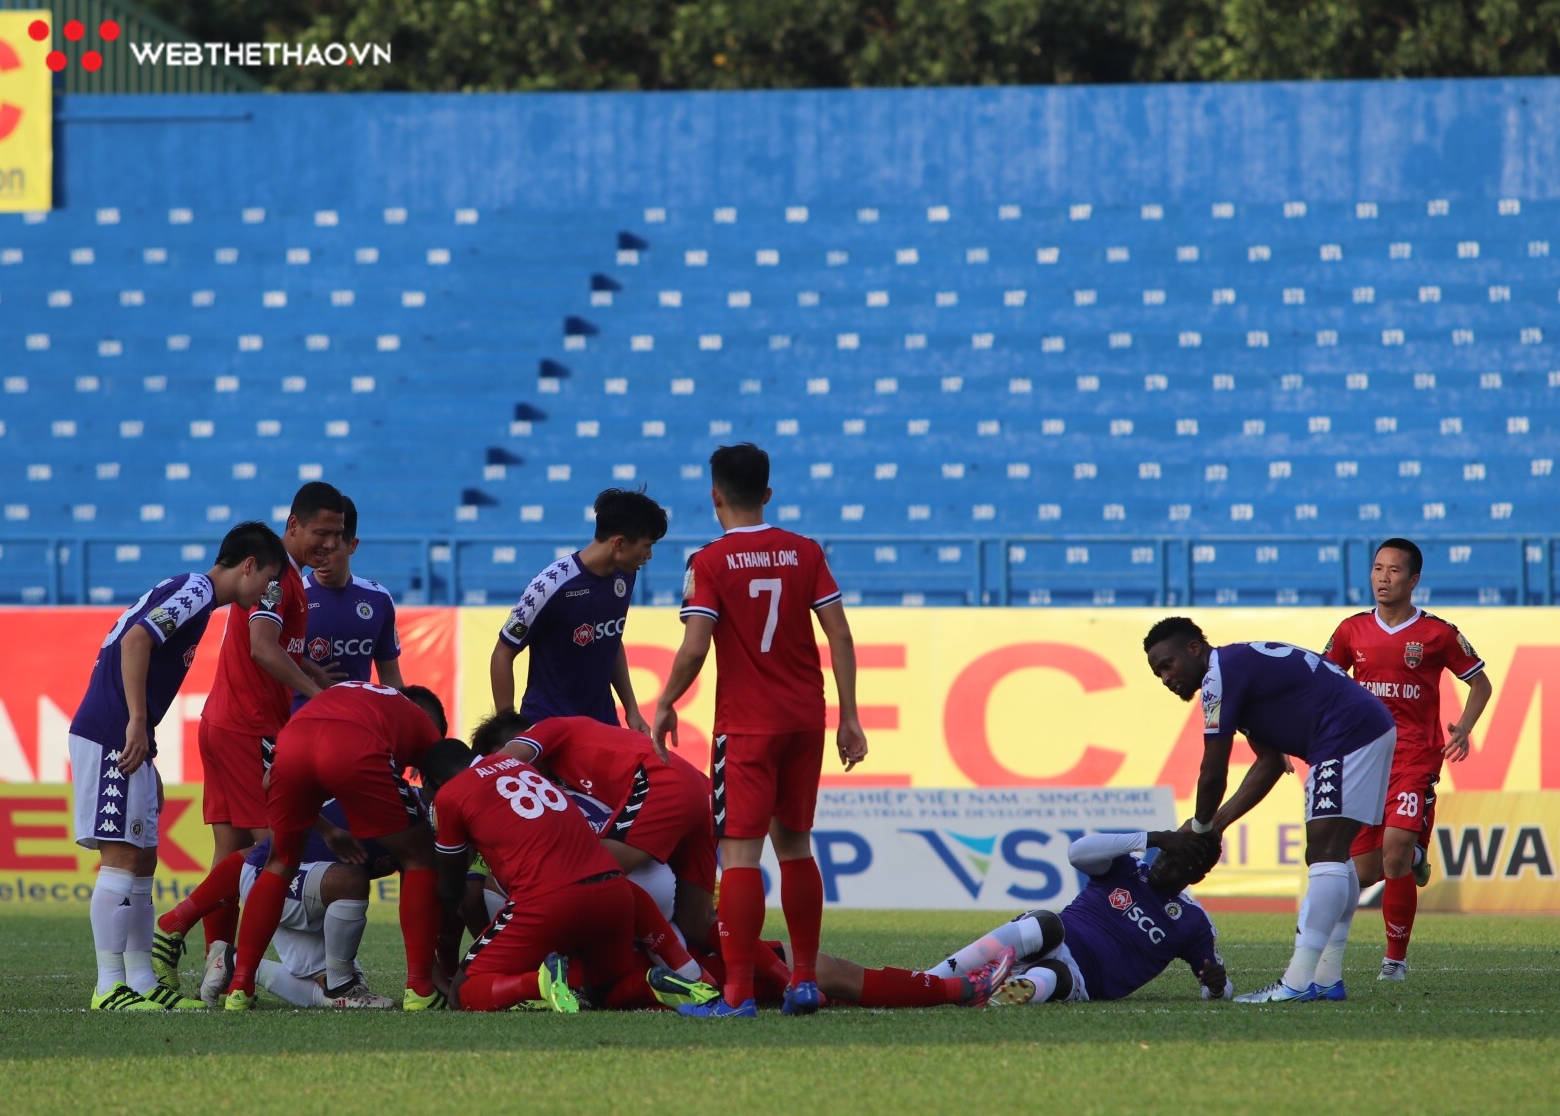 Cầu thủ đi cấp cứu, bàn thắng giây cuối và Tấn Trường đấu khẩu với CĐV, trận cầu điên rồ của Quang Hải và đồng đội